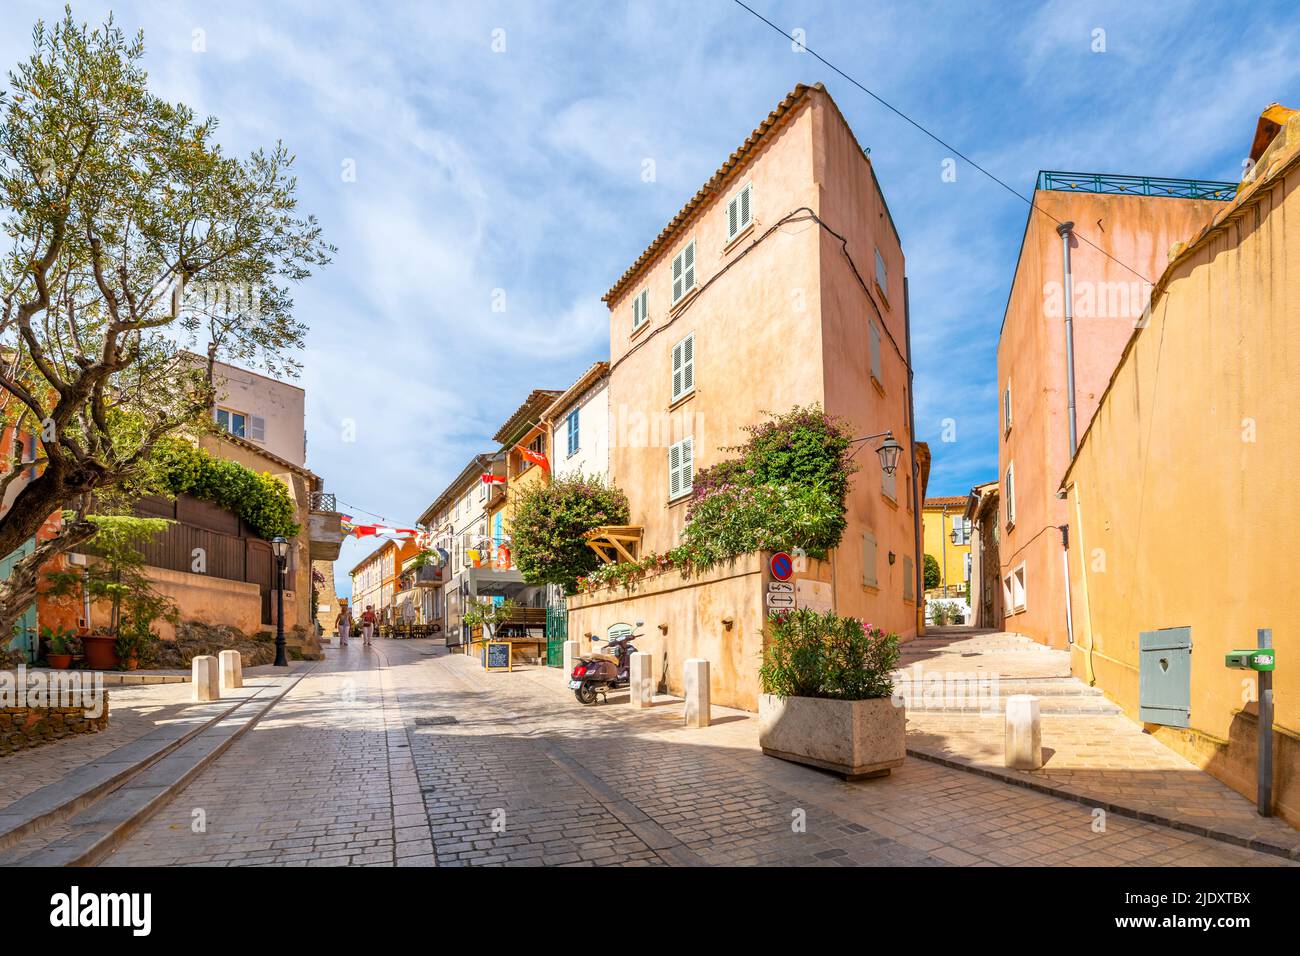 Des boutiques et des bâtiments colorés bordent les ruelles étroites et les rues vallonnées de la vieille ville de Saint-Tropez, en France. Banque D'Images